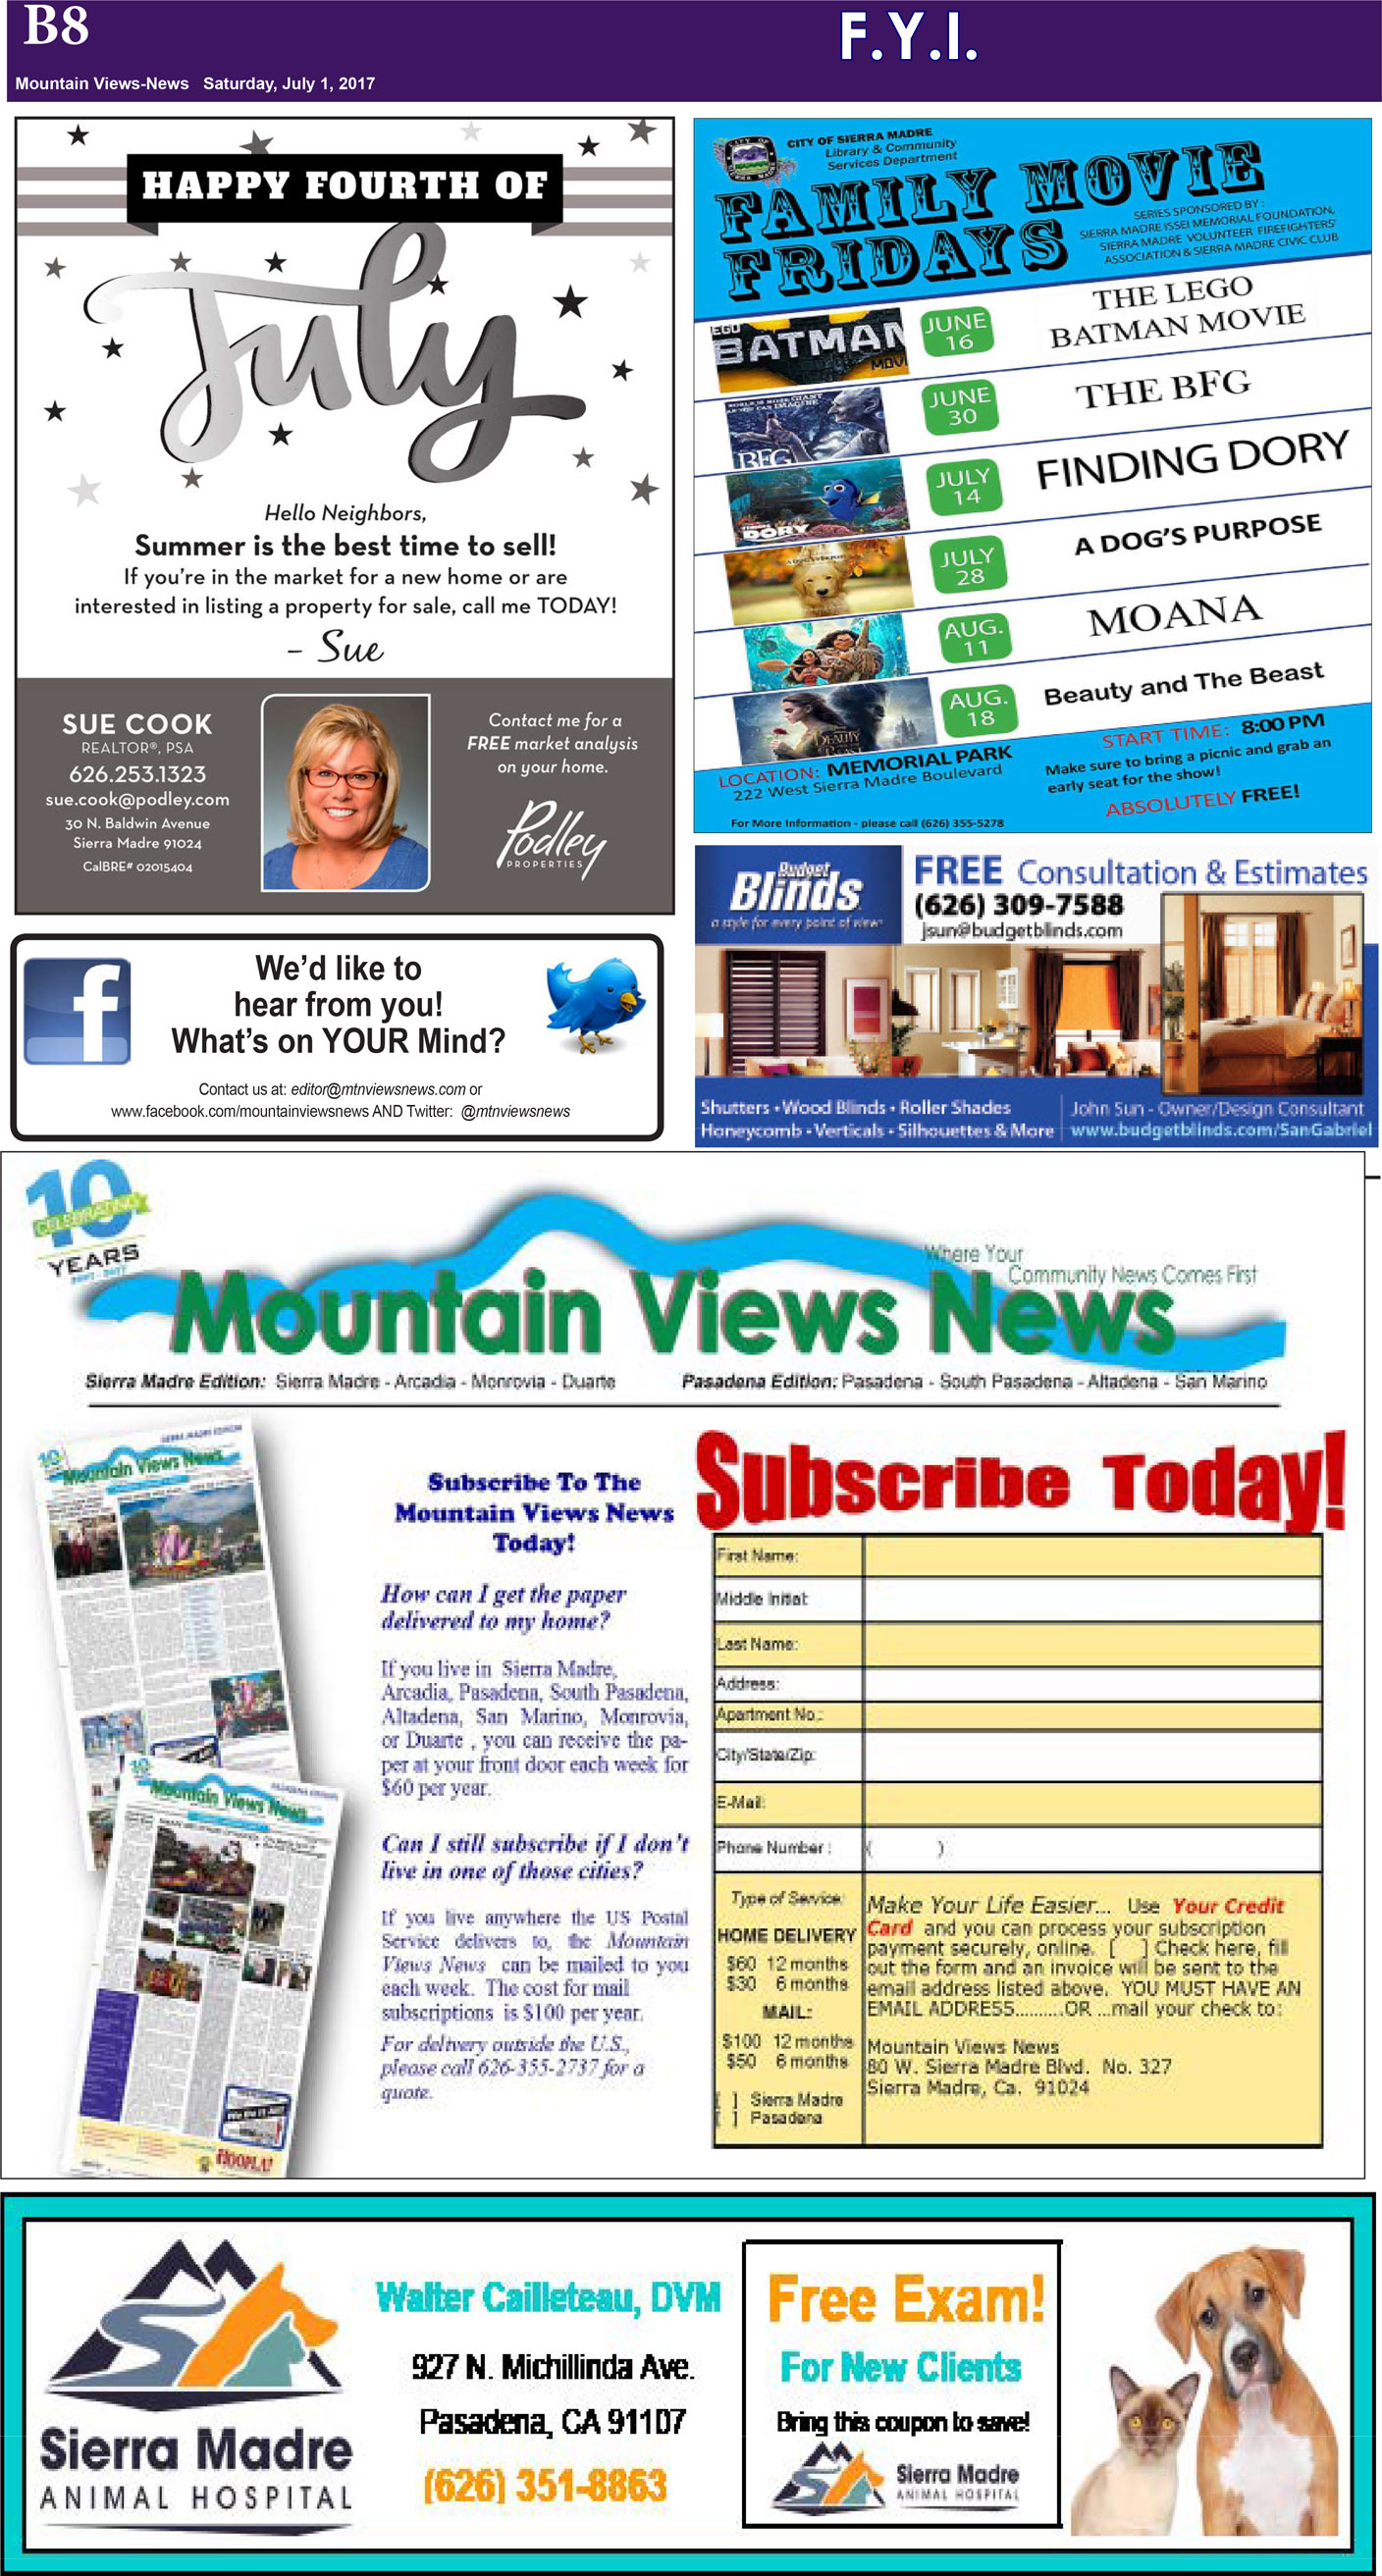 MVNews this week:  Page B:8